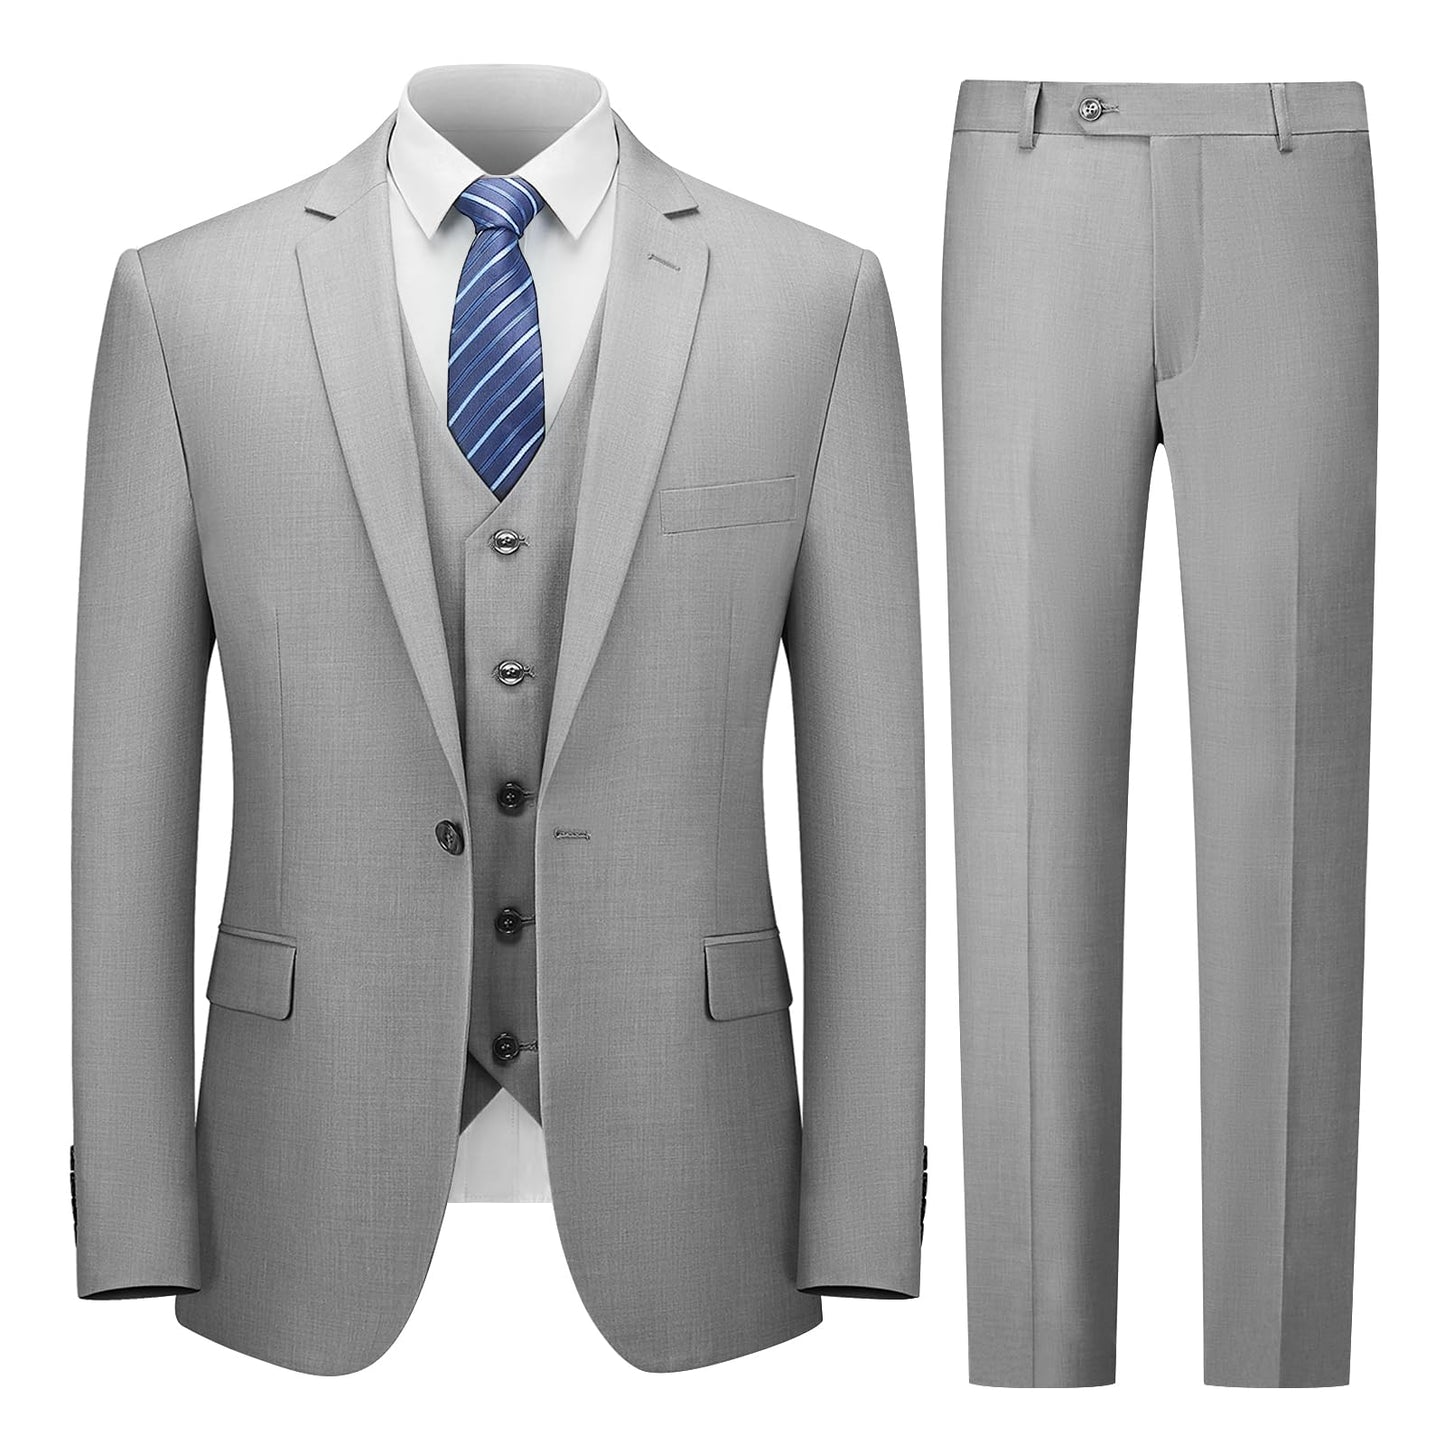 Cooper & Nelson Men's Suit Slim Fit, 3 Piece Suits for Men, One Button Jacket Vest Pants with Tie, Tuxedo Set Light Grey XS